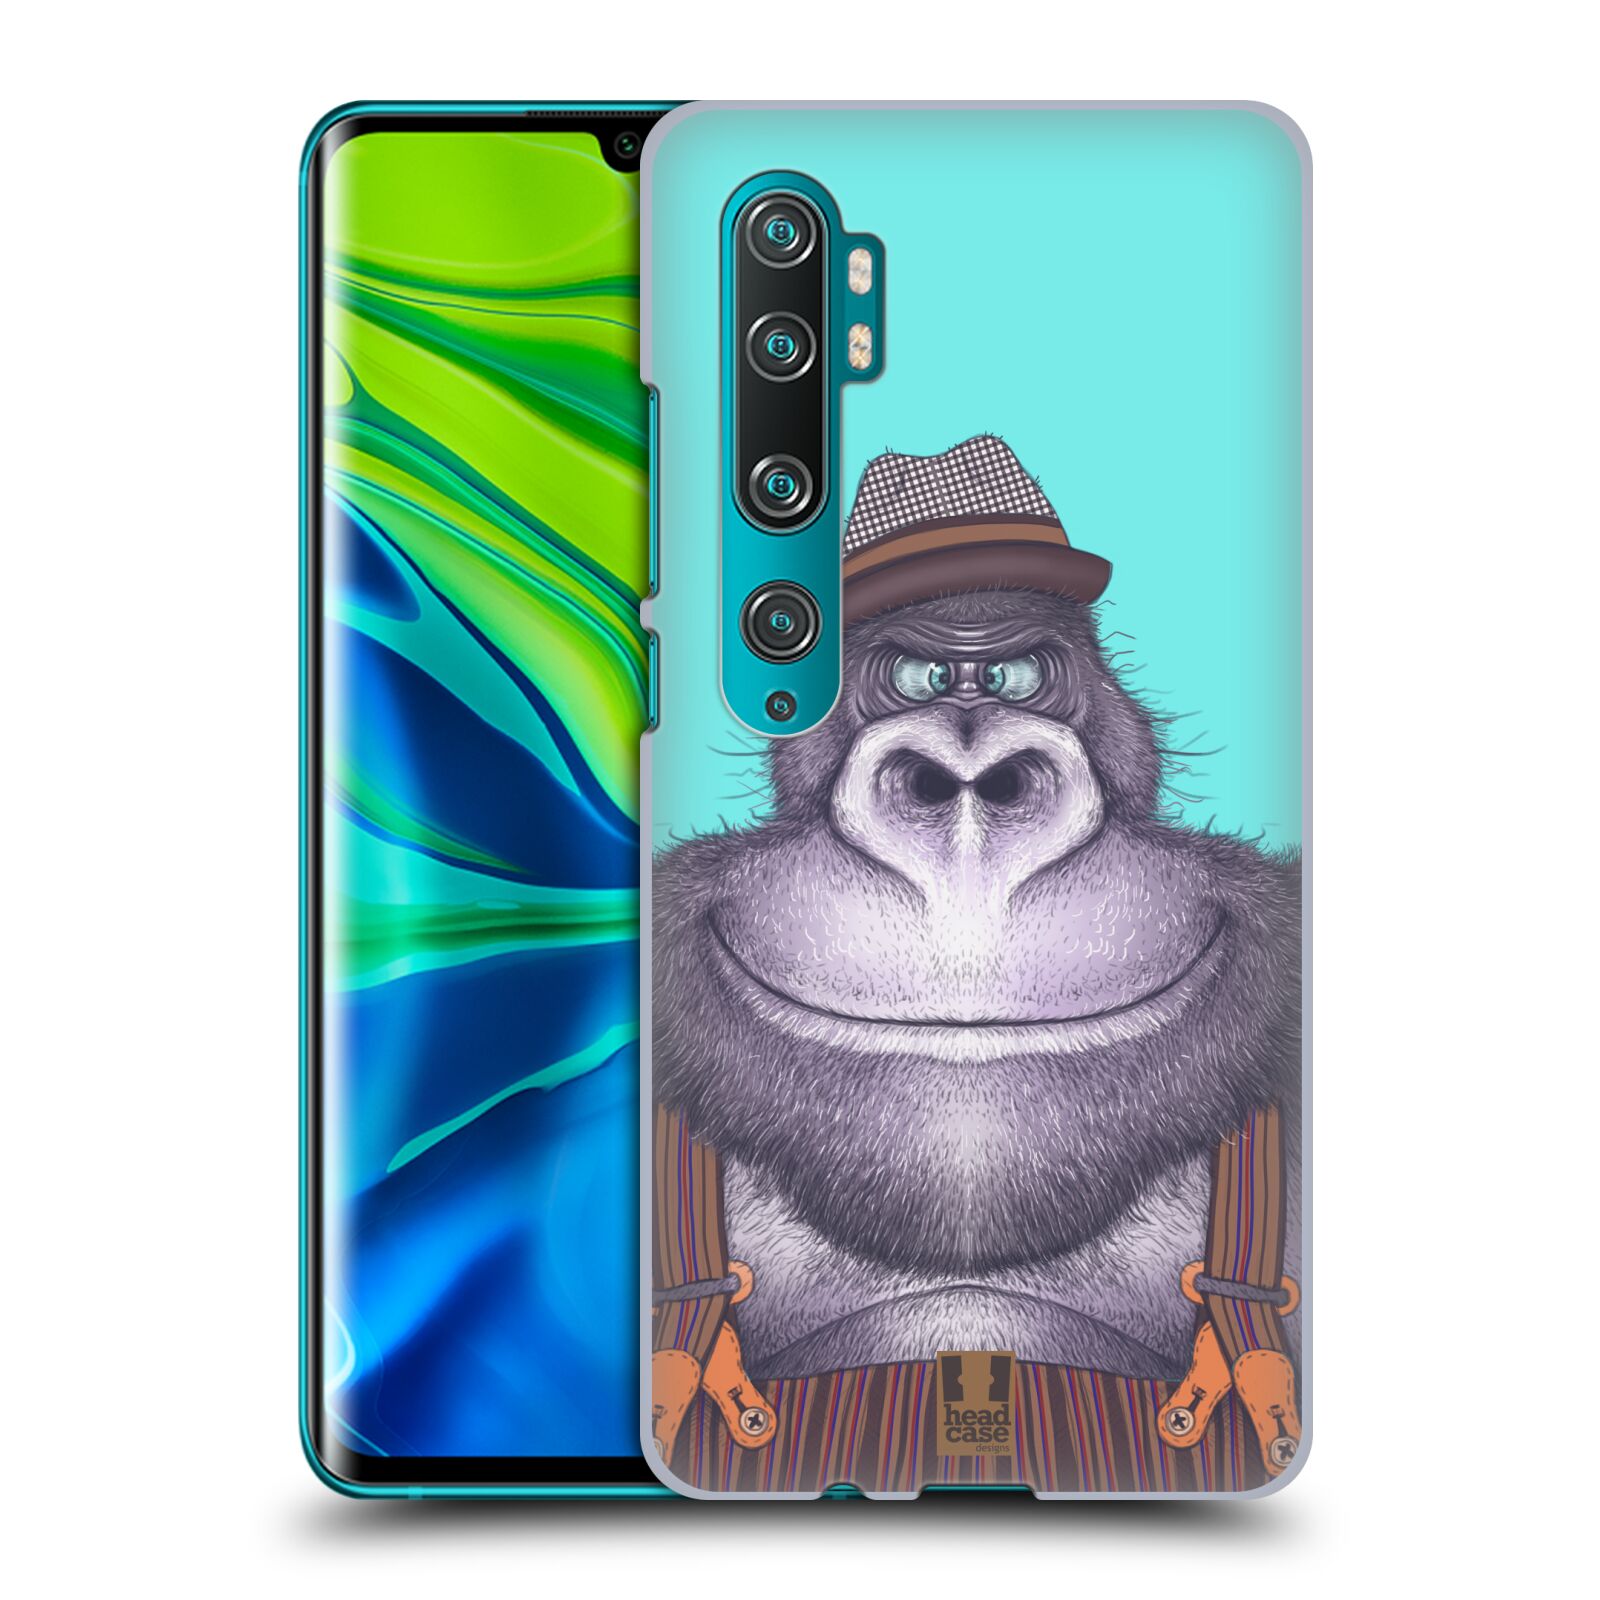 Pouzdro na mobil Xiaomi Mi Note 10 / Mi Note 10 PRO - HEAD CASE - vzor Kreslená zvířátka gorila